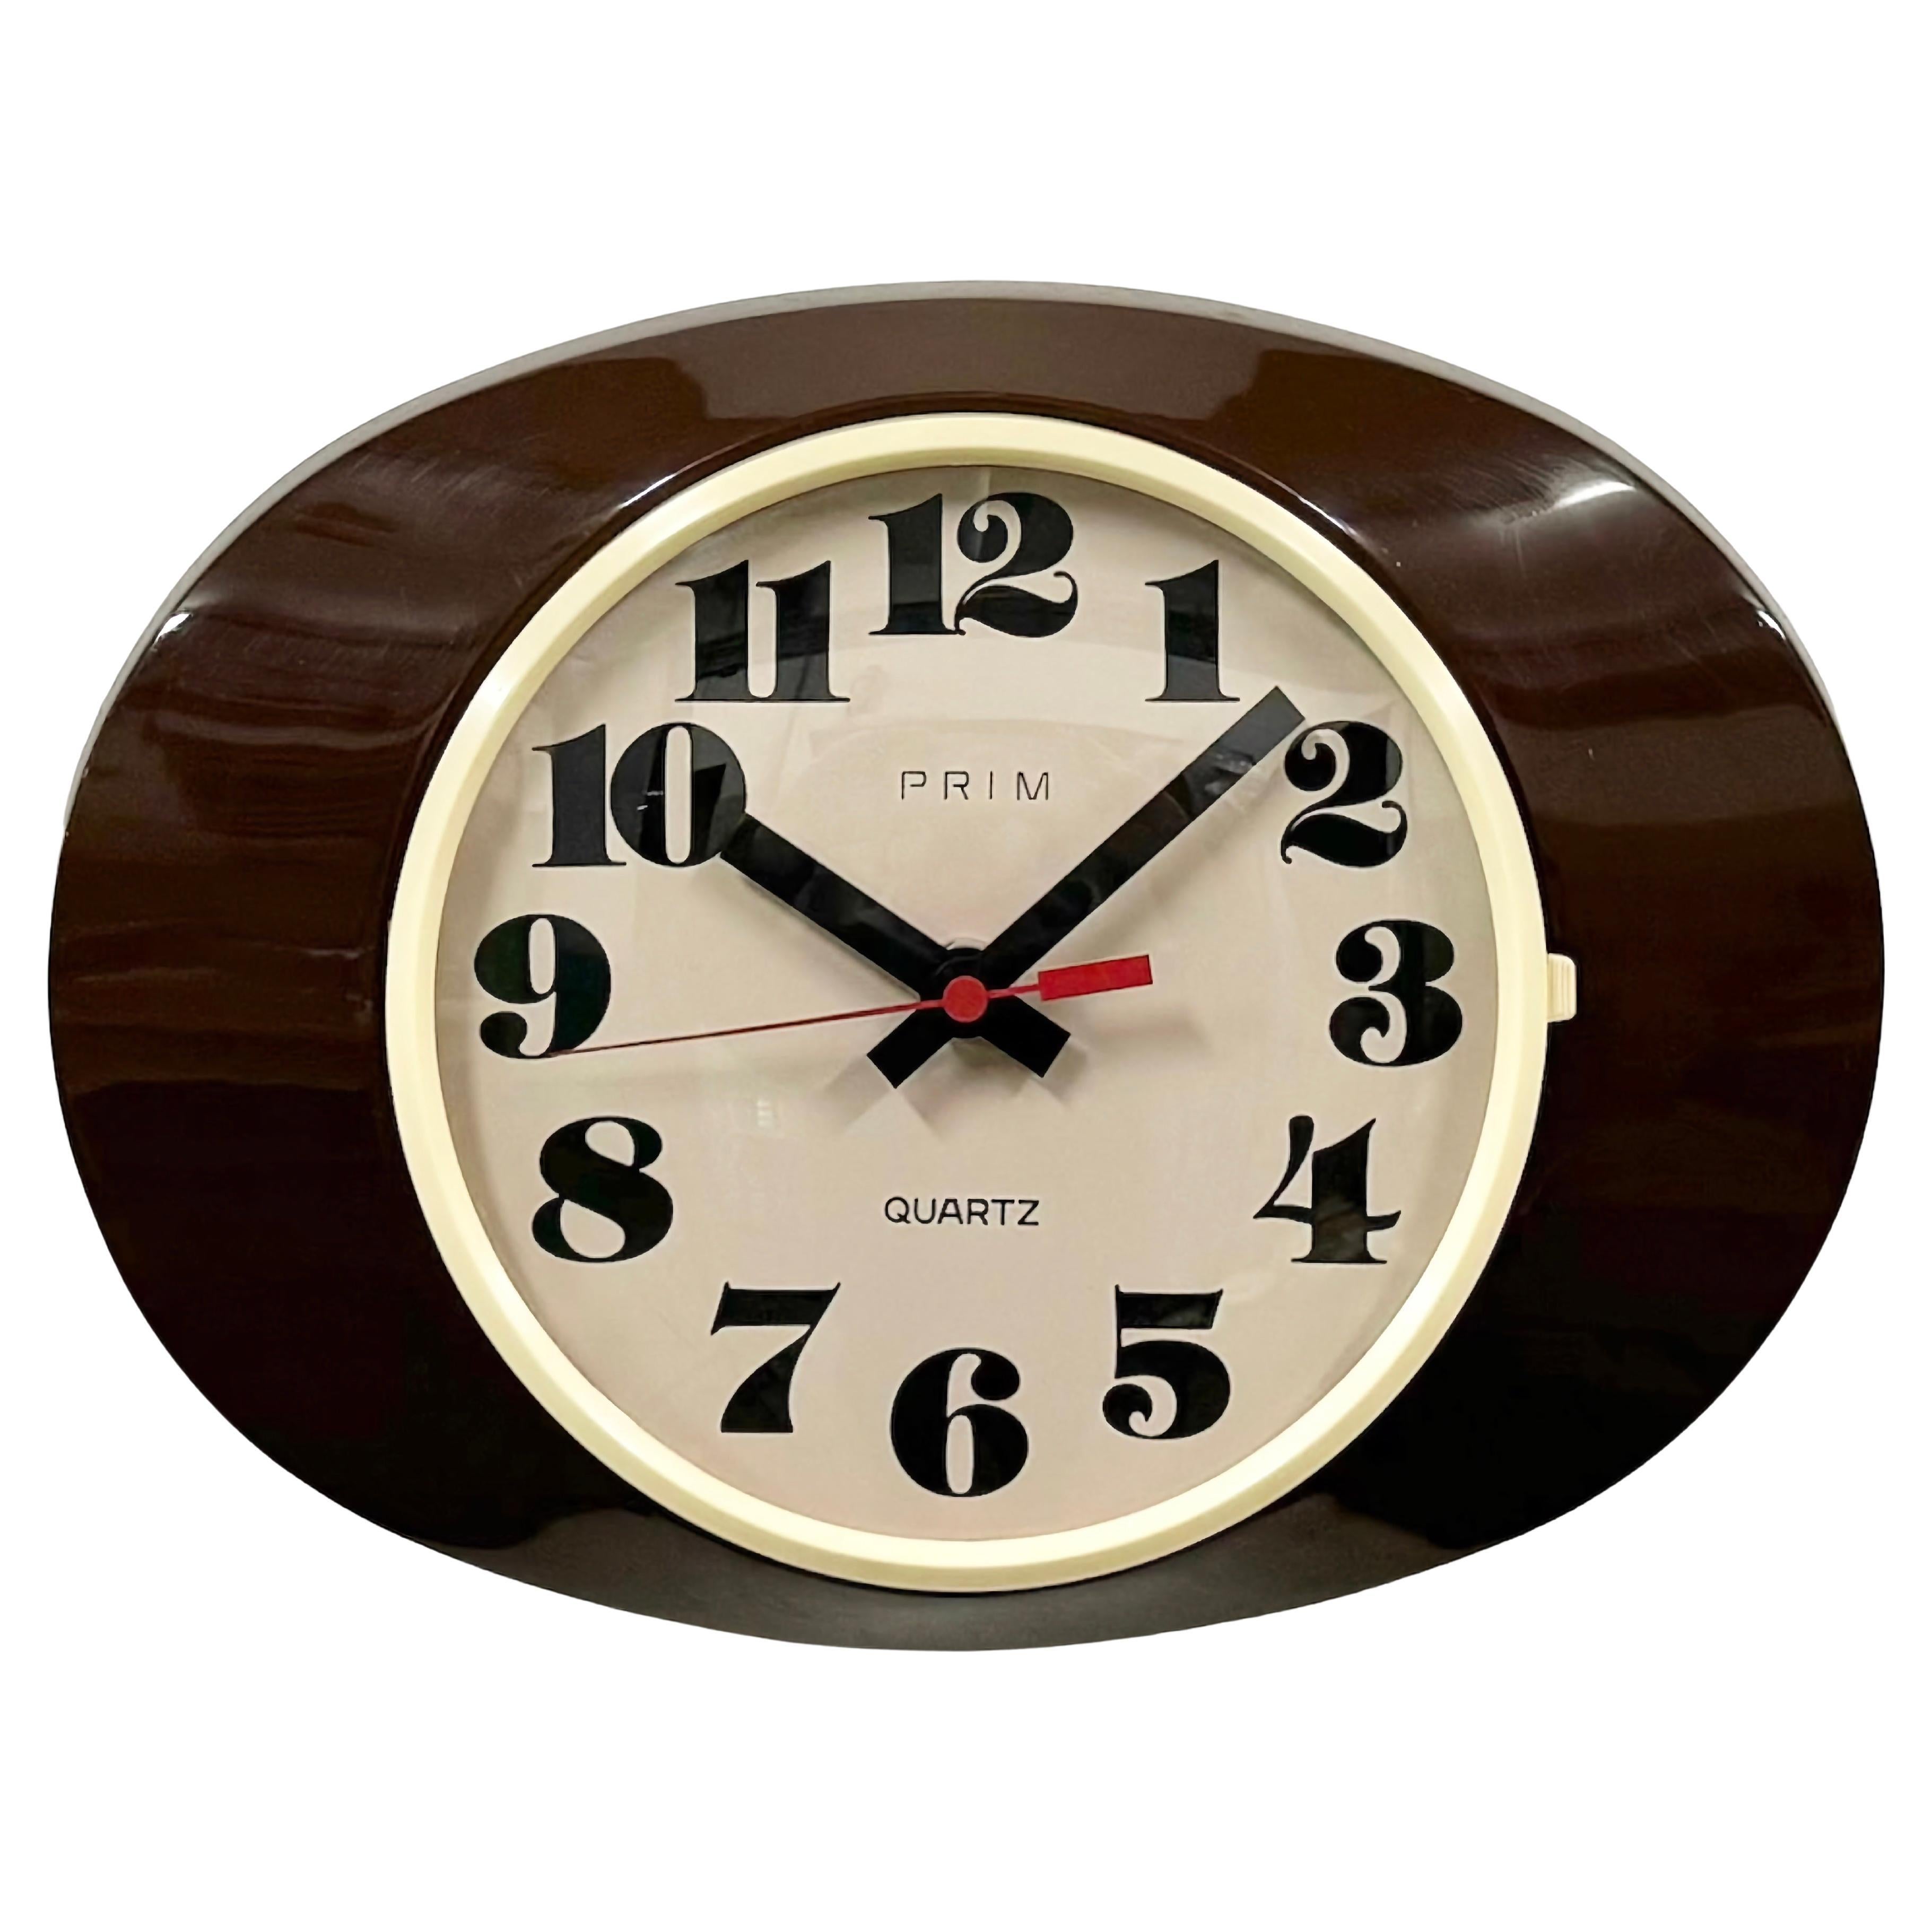 Vintage Brown Bakelite Wall Clock from Prim, 1970s For Sale